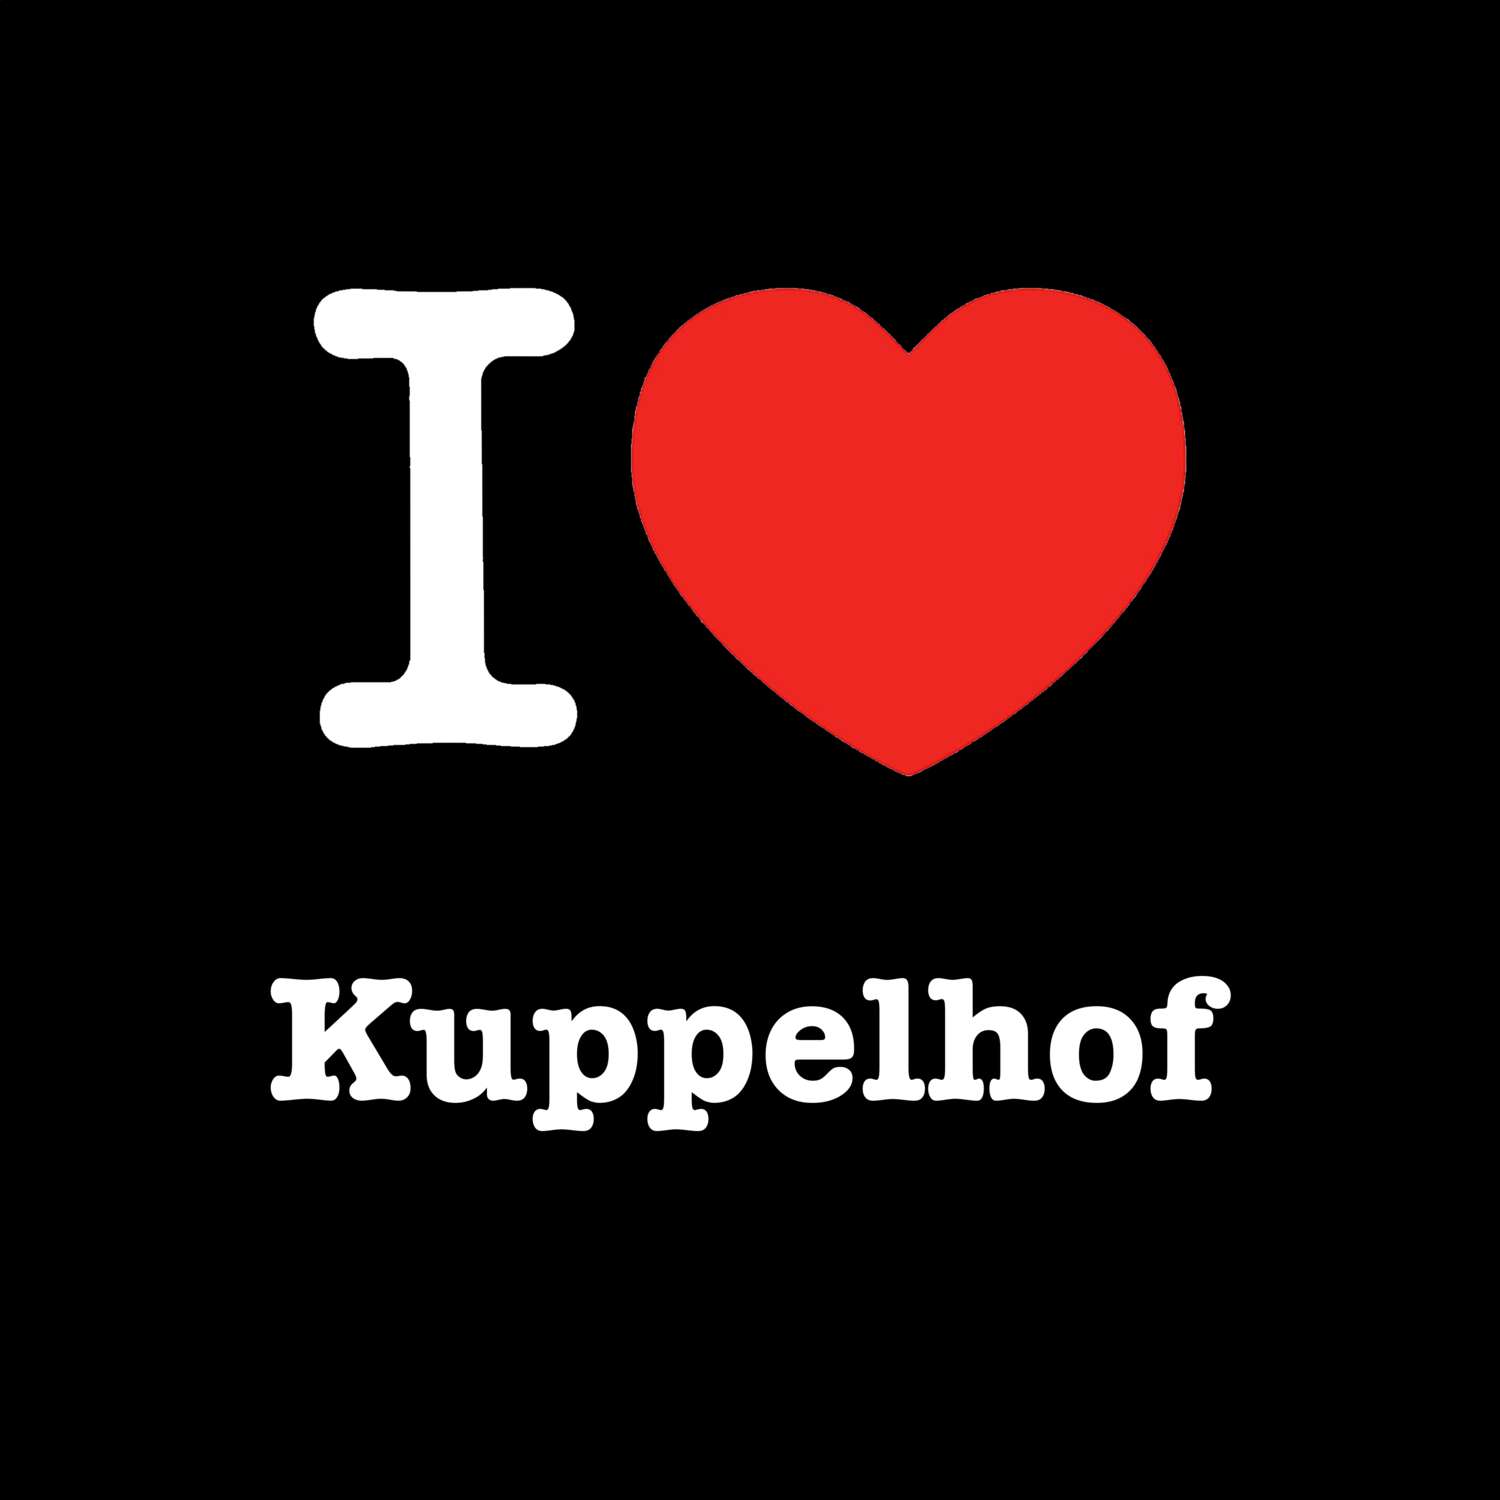 Kuppelhof T-Shirt »I love«